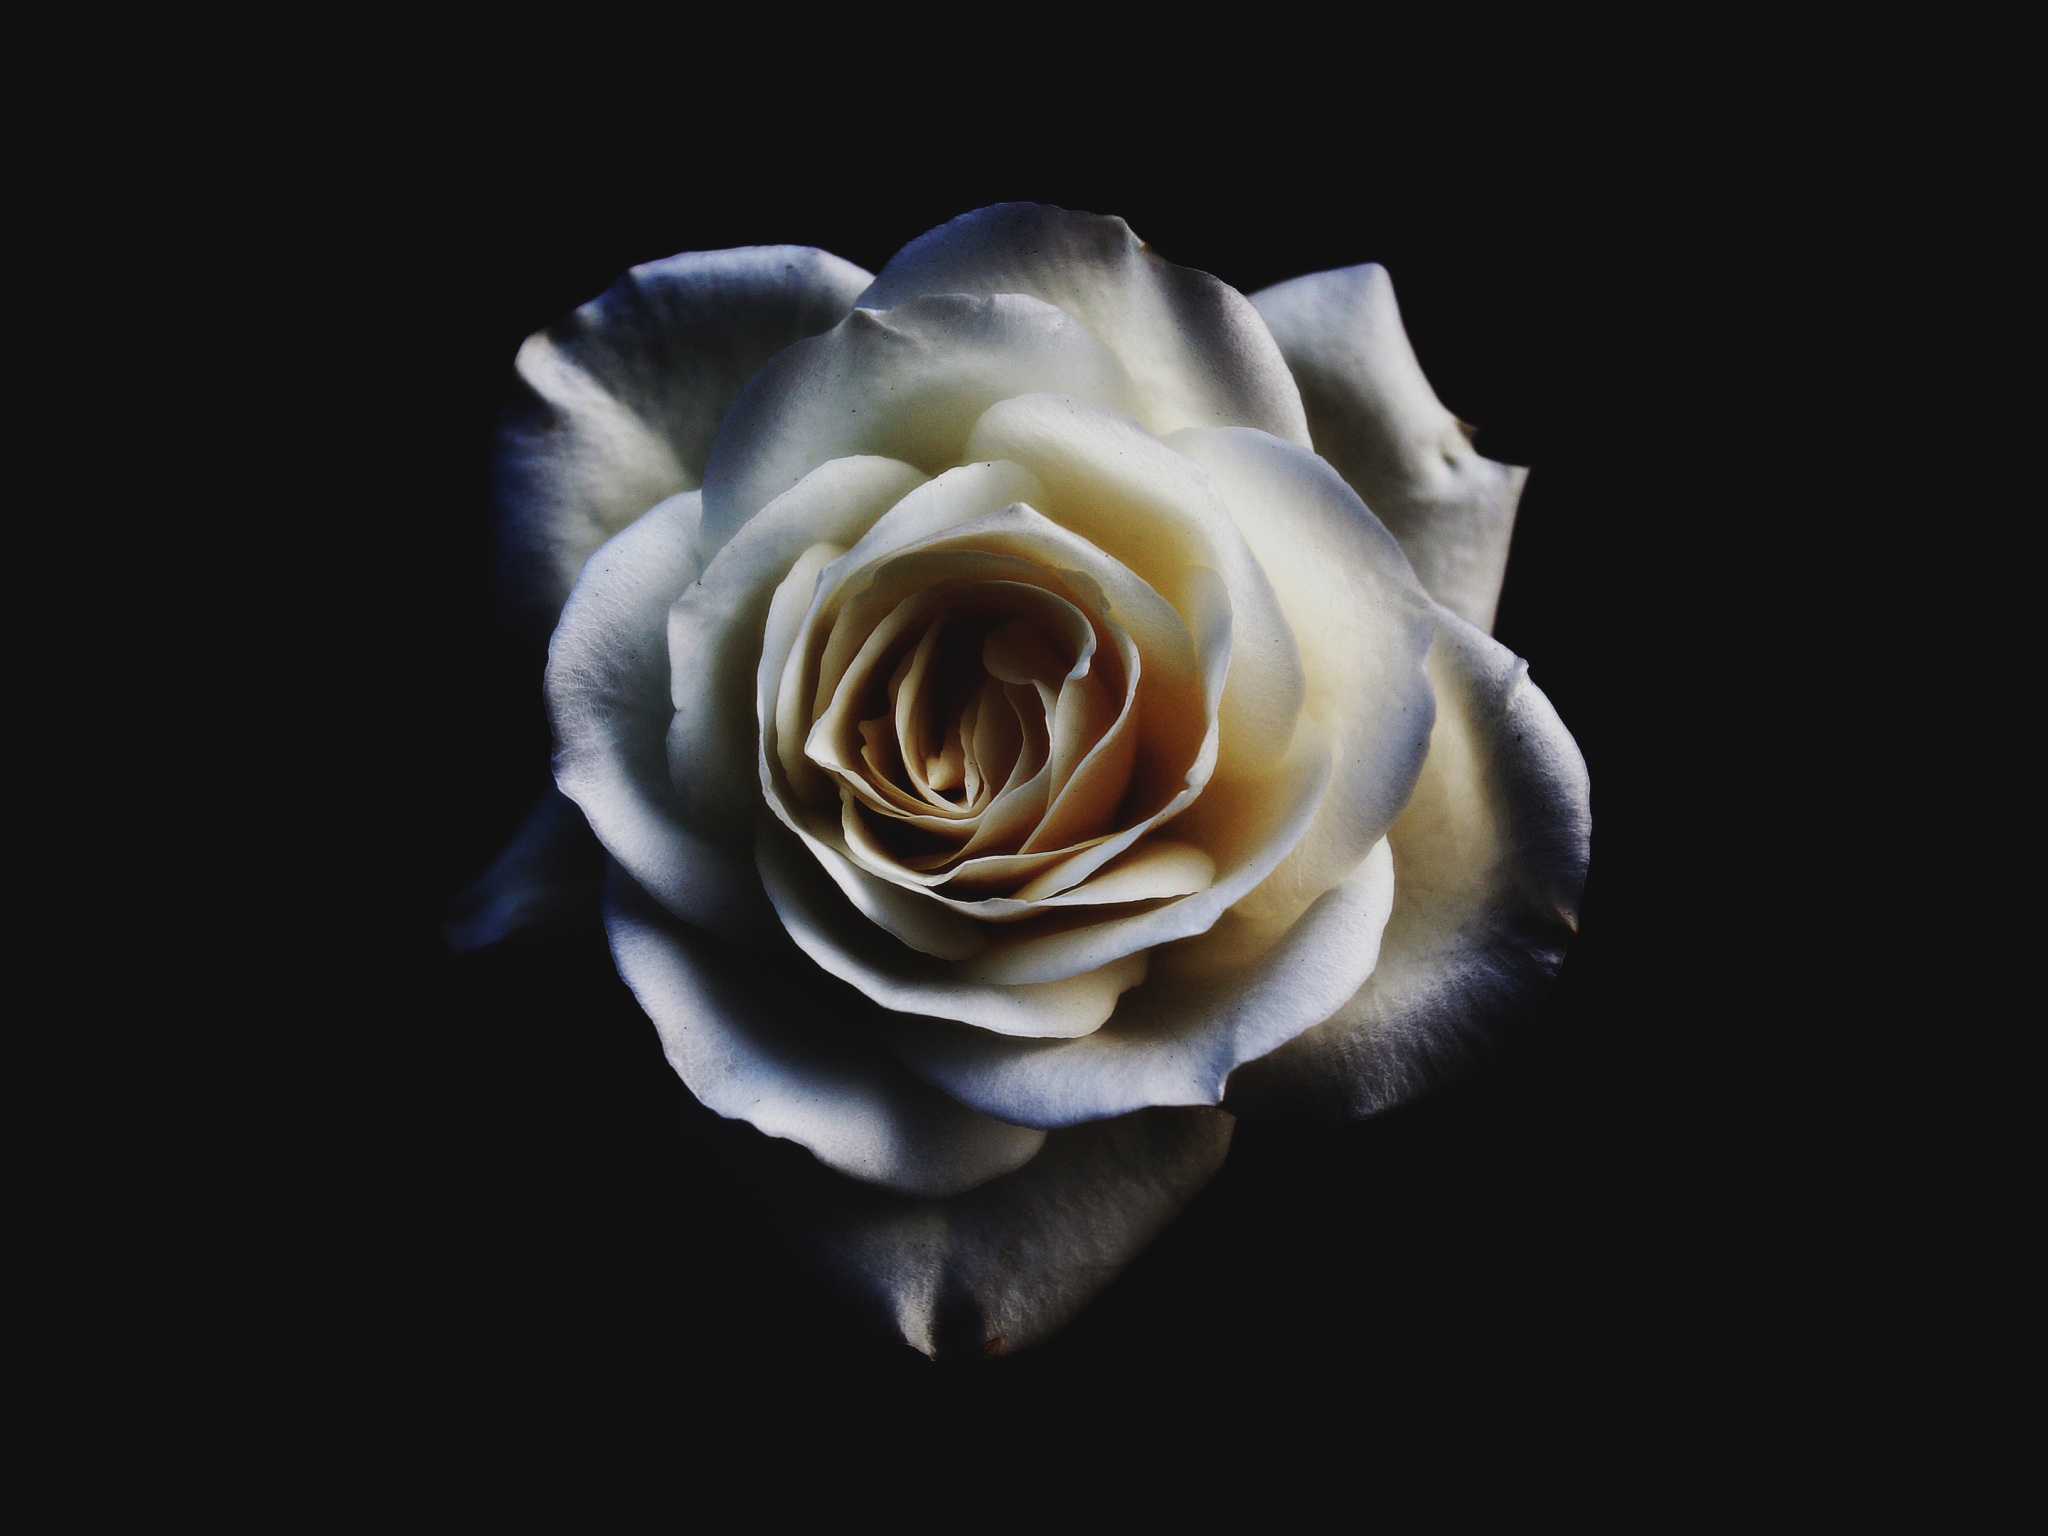 Những đóa hoa hồng trắng tượng trưng cho tình yêu và sự thuần khiết, họa tiết hoa hồng trắng sẽ khiến bạn cảm thấy nhẹ nhàng và yên bình. Hãy ngắm nhìn chúng trên bức tranh để cảm nhận hết được sự thanh tao của hoa hồng trắng.